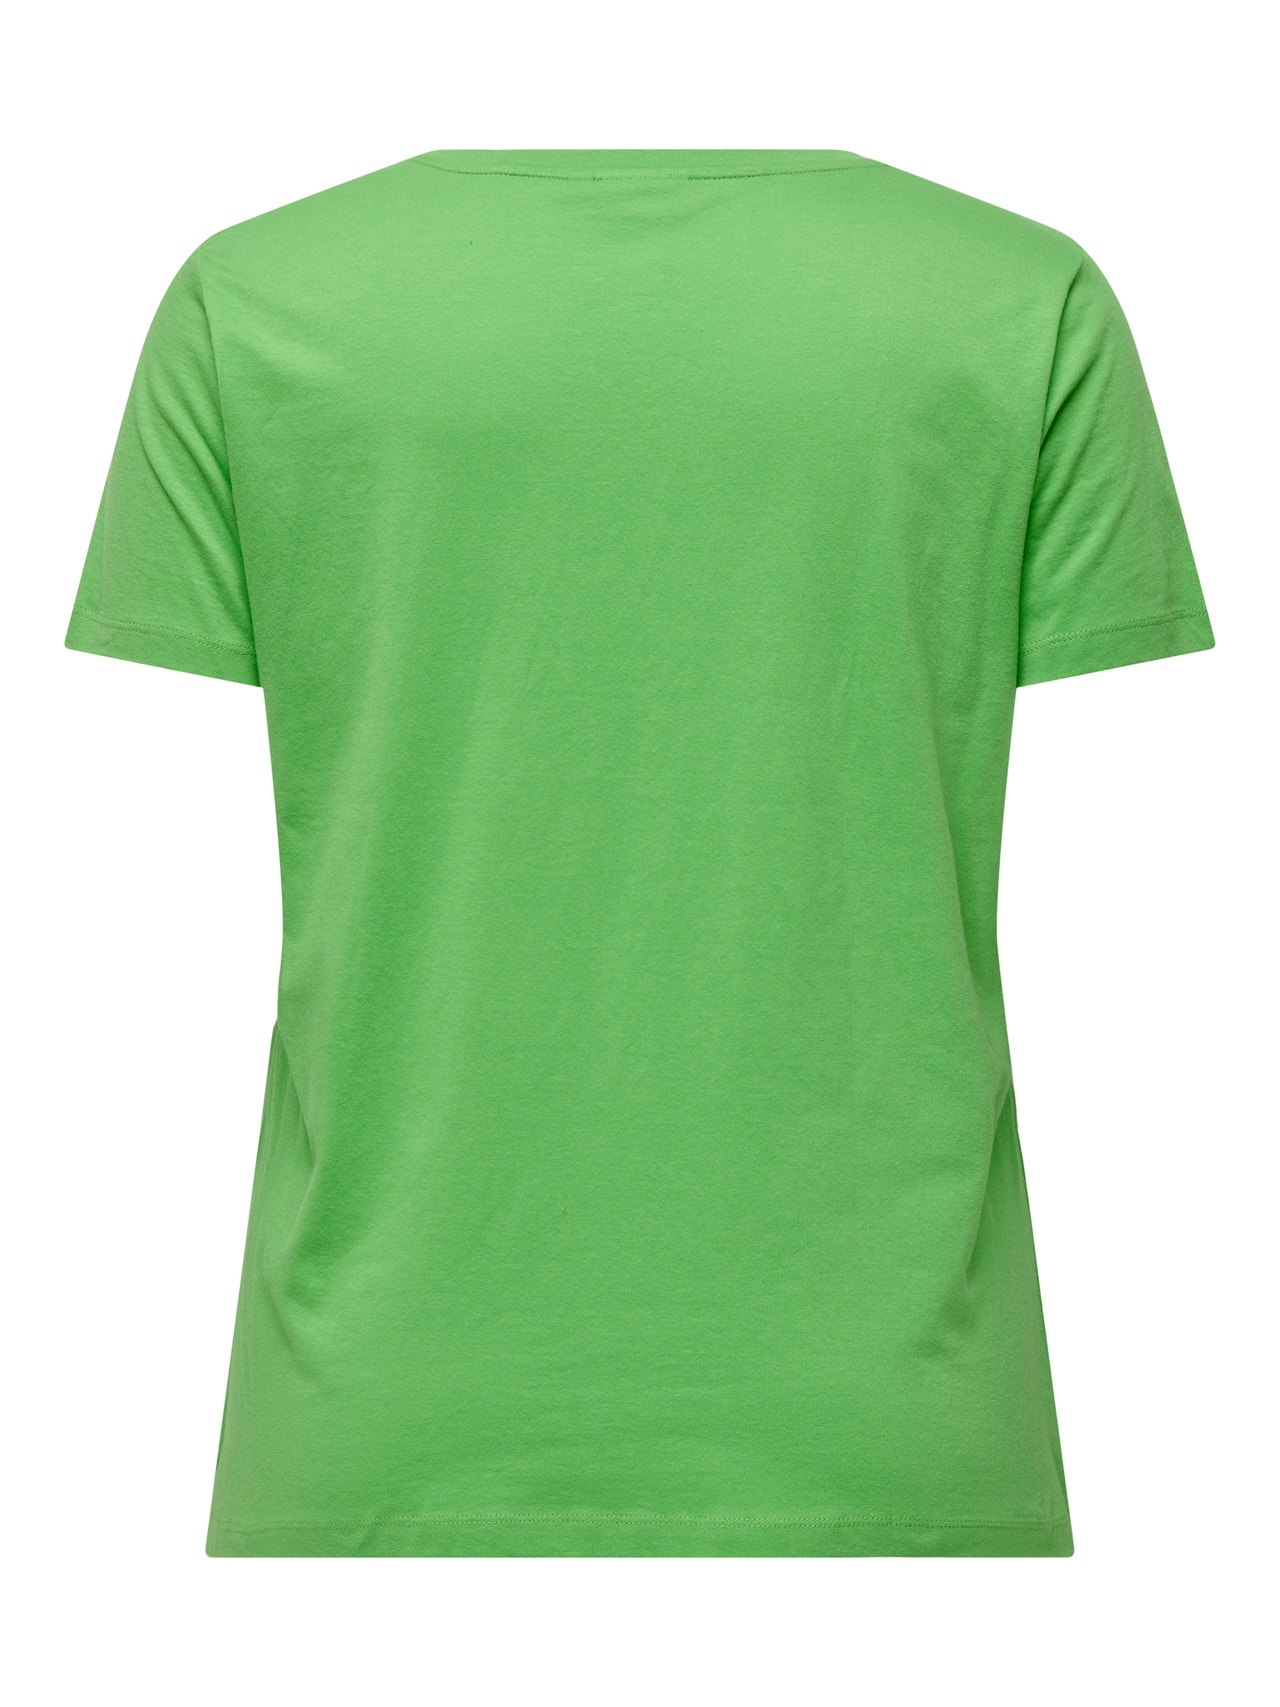 ONLY Regular fit V-pääntie T-paidat -Vibrant Green - 15295542